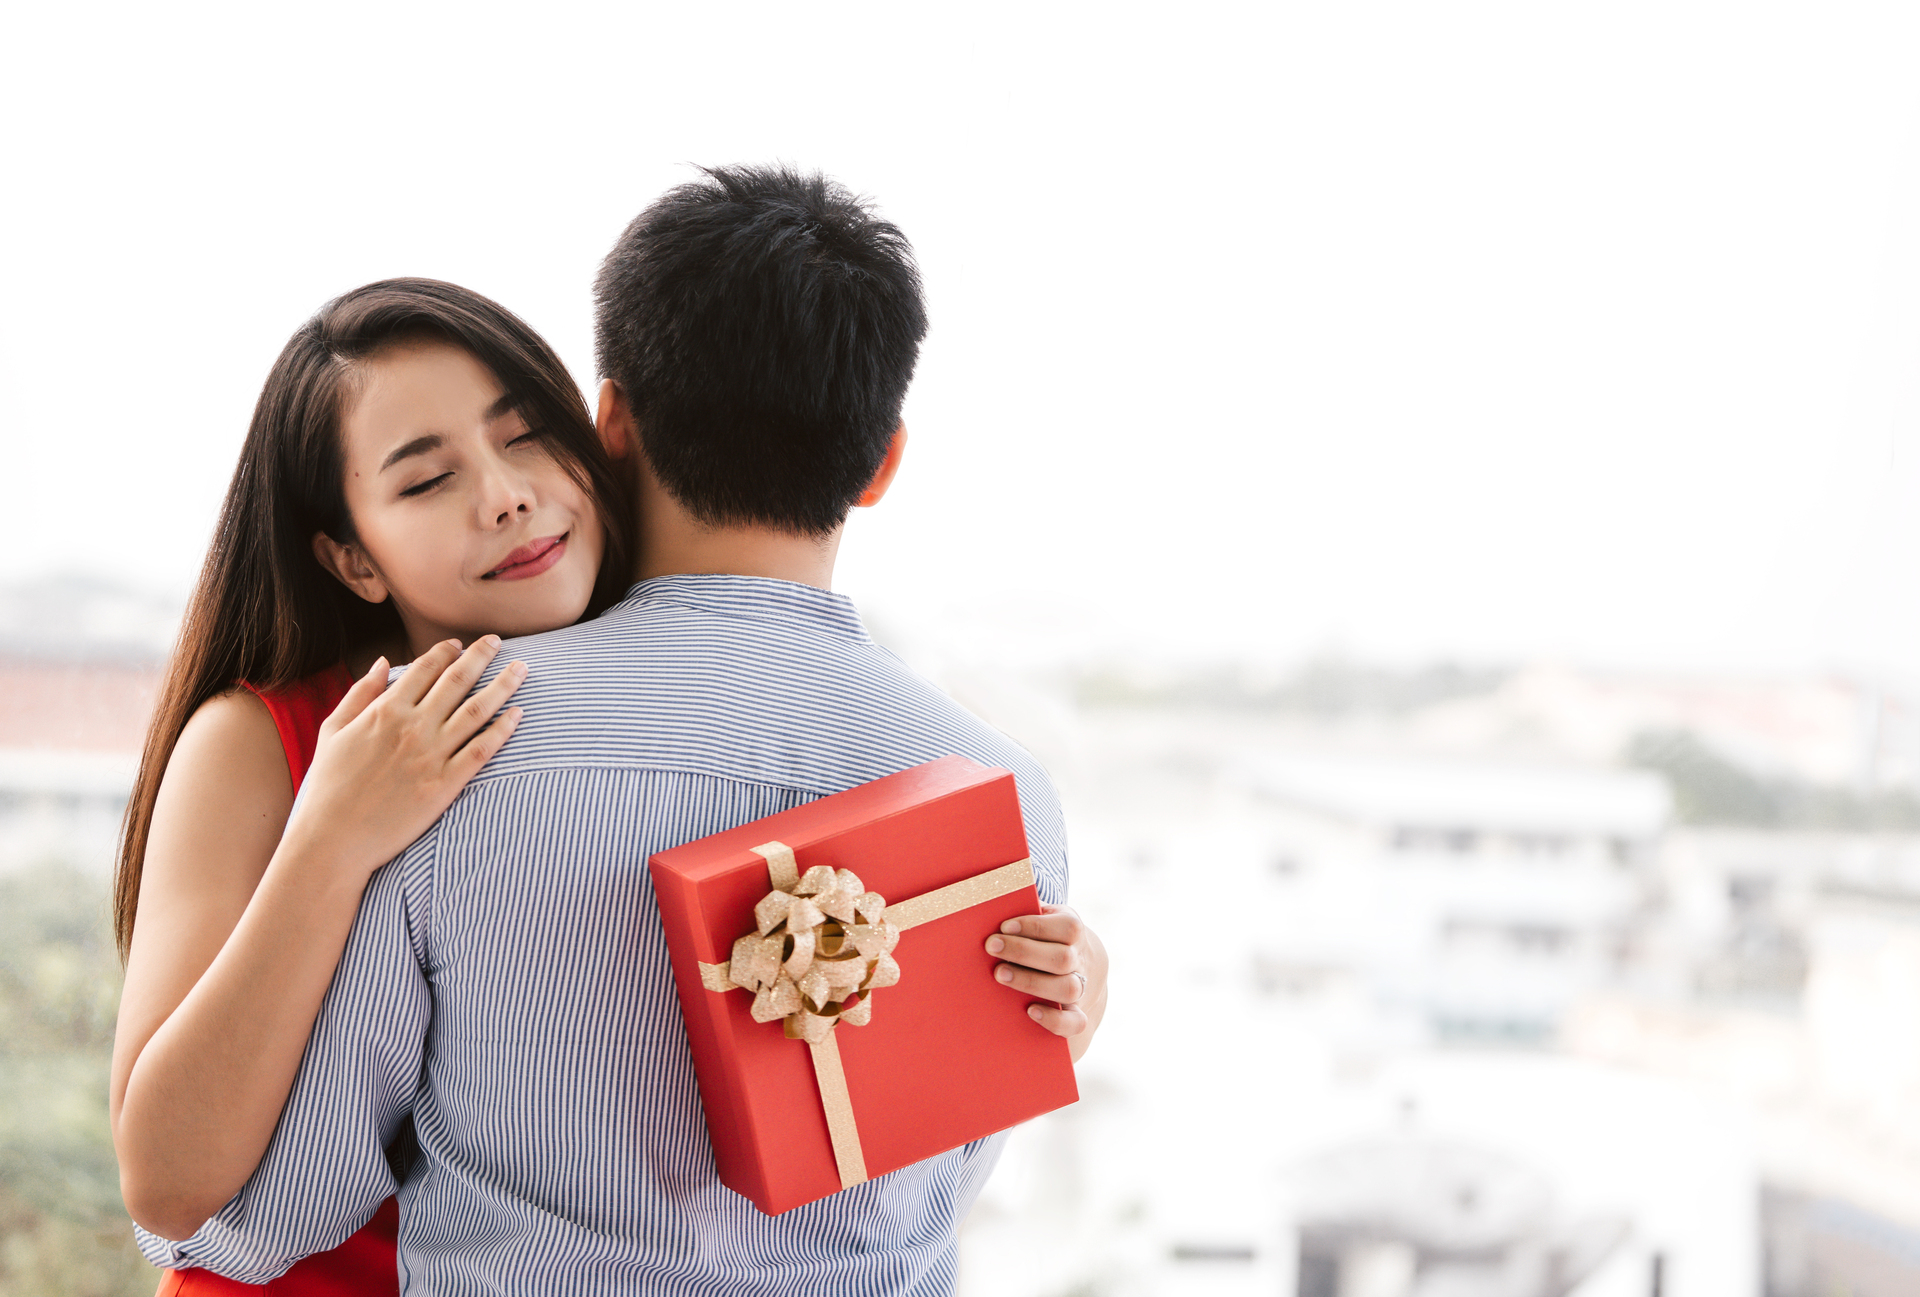 In questa immagine c'è un ragazzo con una ragazza e la ragazza tiene tra le mani un regalo di San Valentino